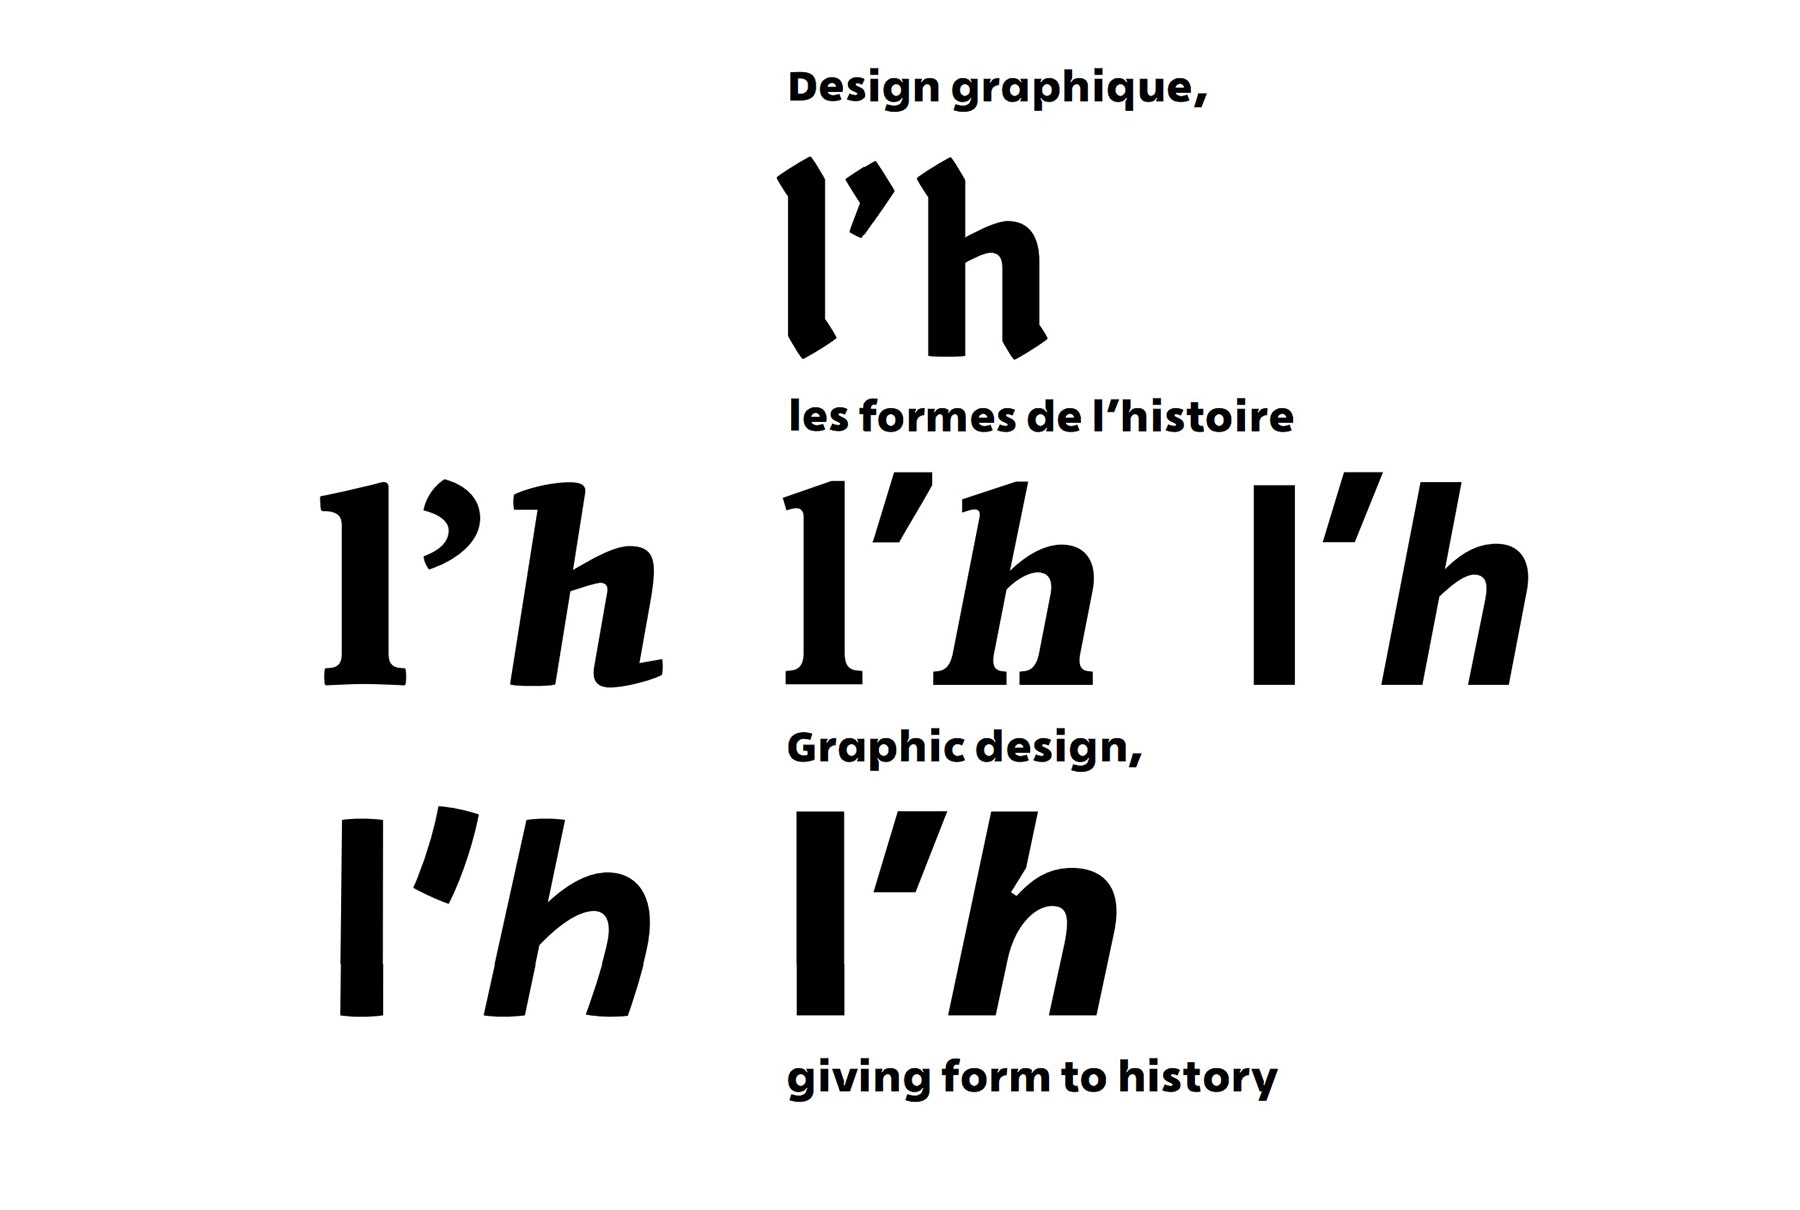 Design graphique, les formes de l’histoire